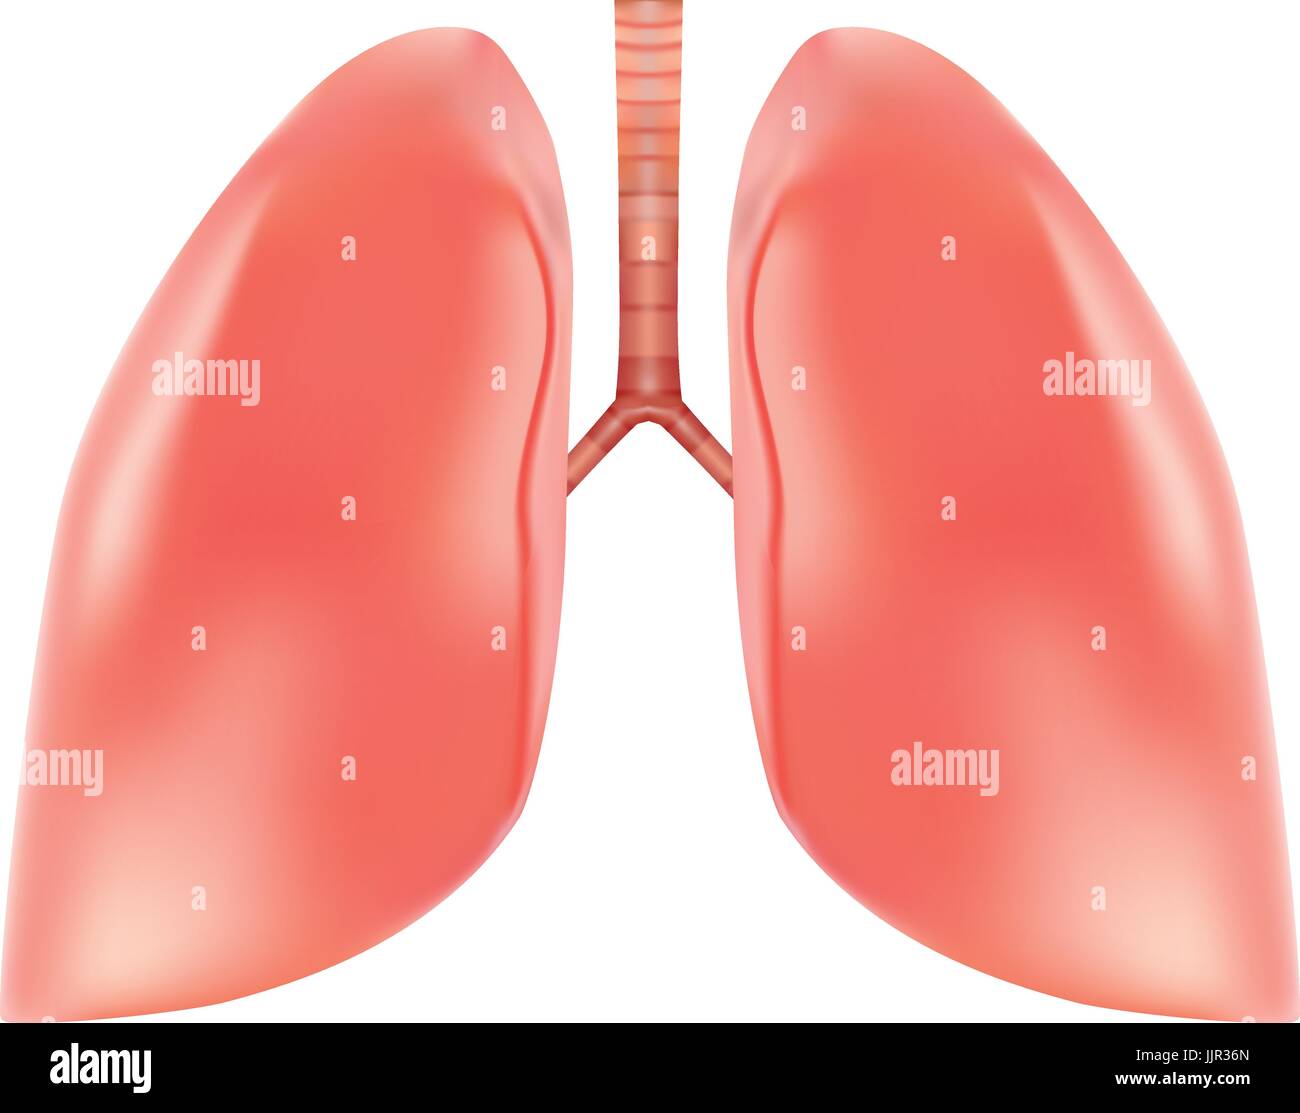 Menschliche Lunge und Luftröhre Anatomie isoliert auf einem weißen Hintergrund. Realistische Vektor-Illustration. Stock Vektor